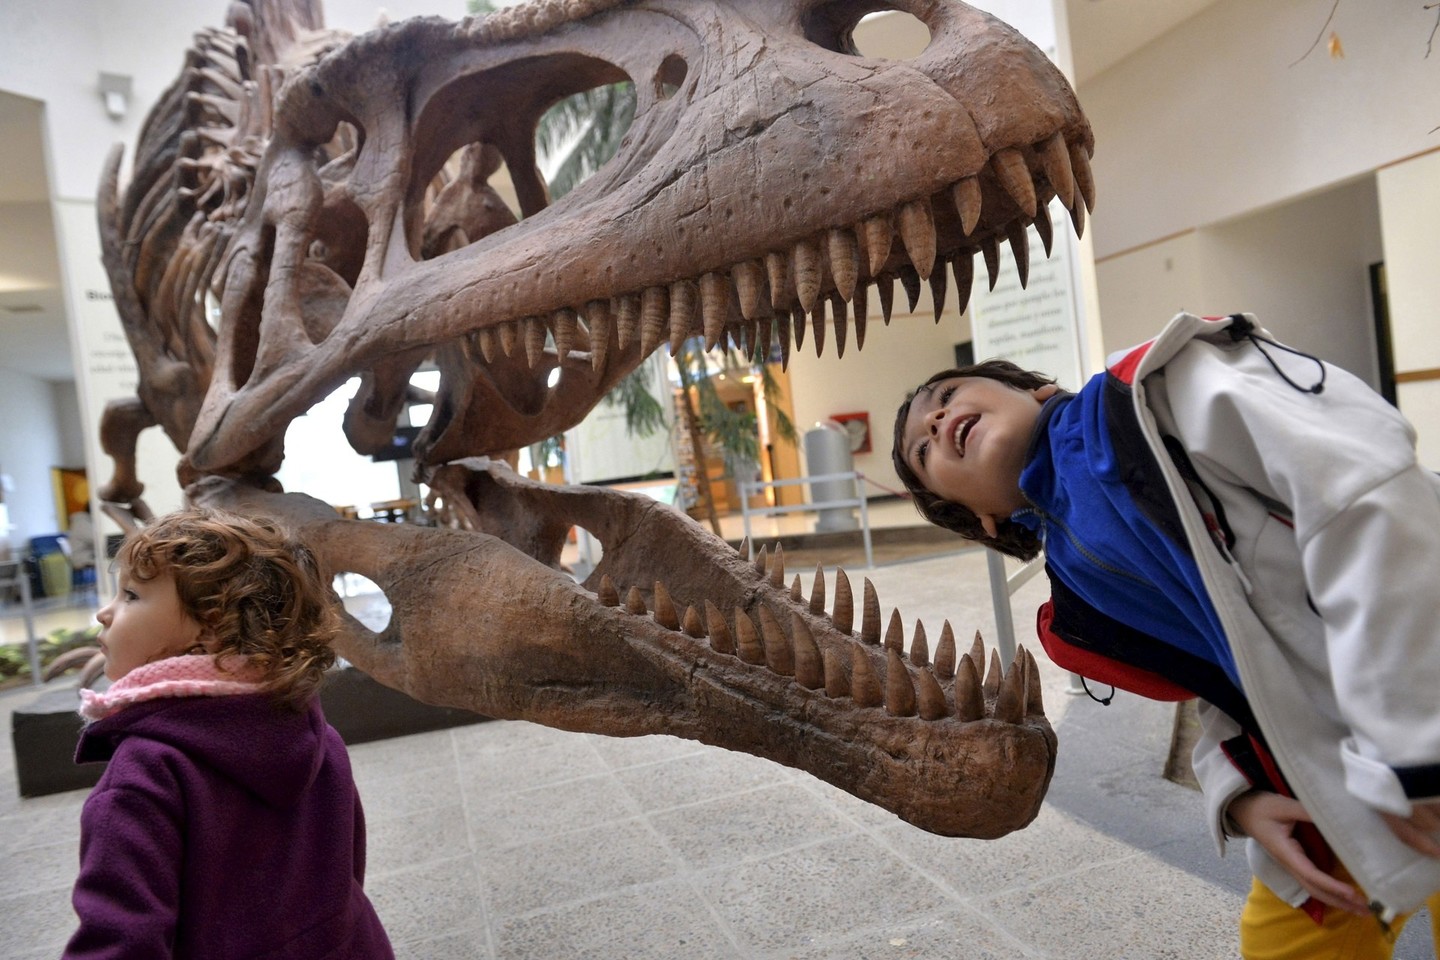 Jei nebūtų išmirę kreidos periodo gyvūnai, dinozaurai ko gero vis dar dominuotų mūsų planetoje.<br>Reuters/Scanpix nuotr.